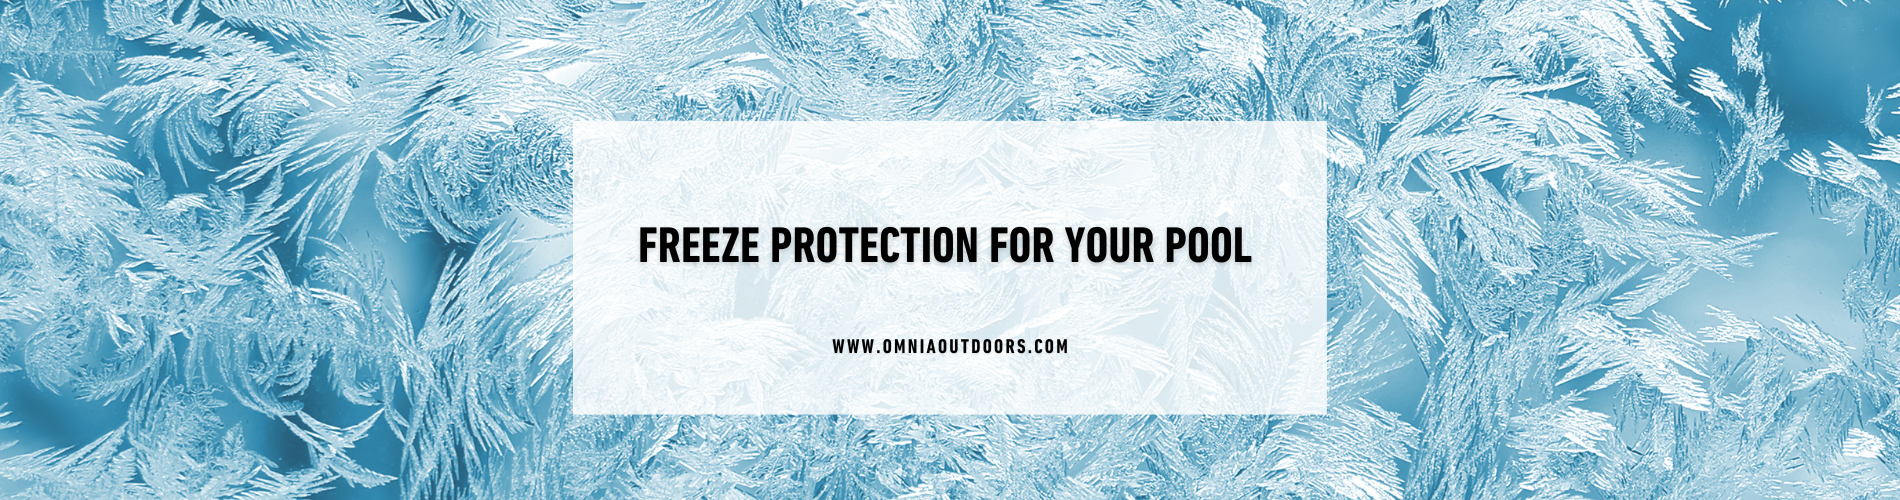 freezeprotection